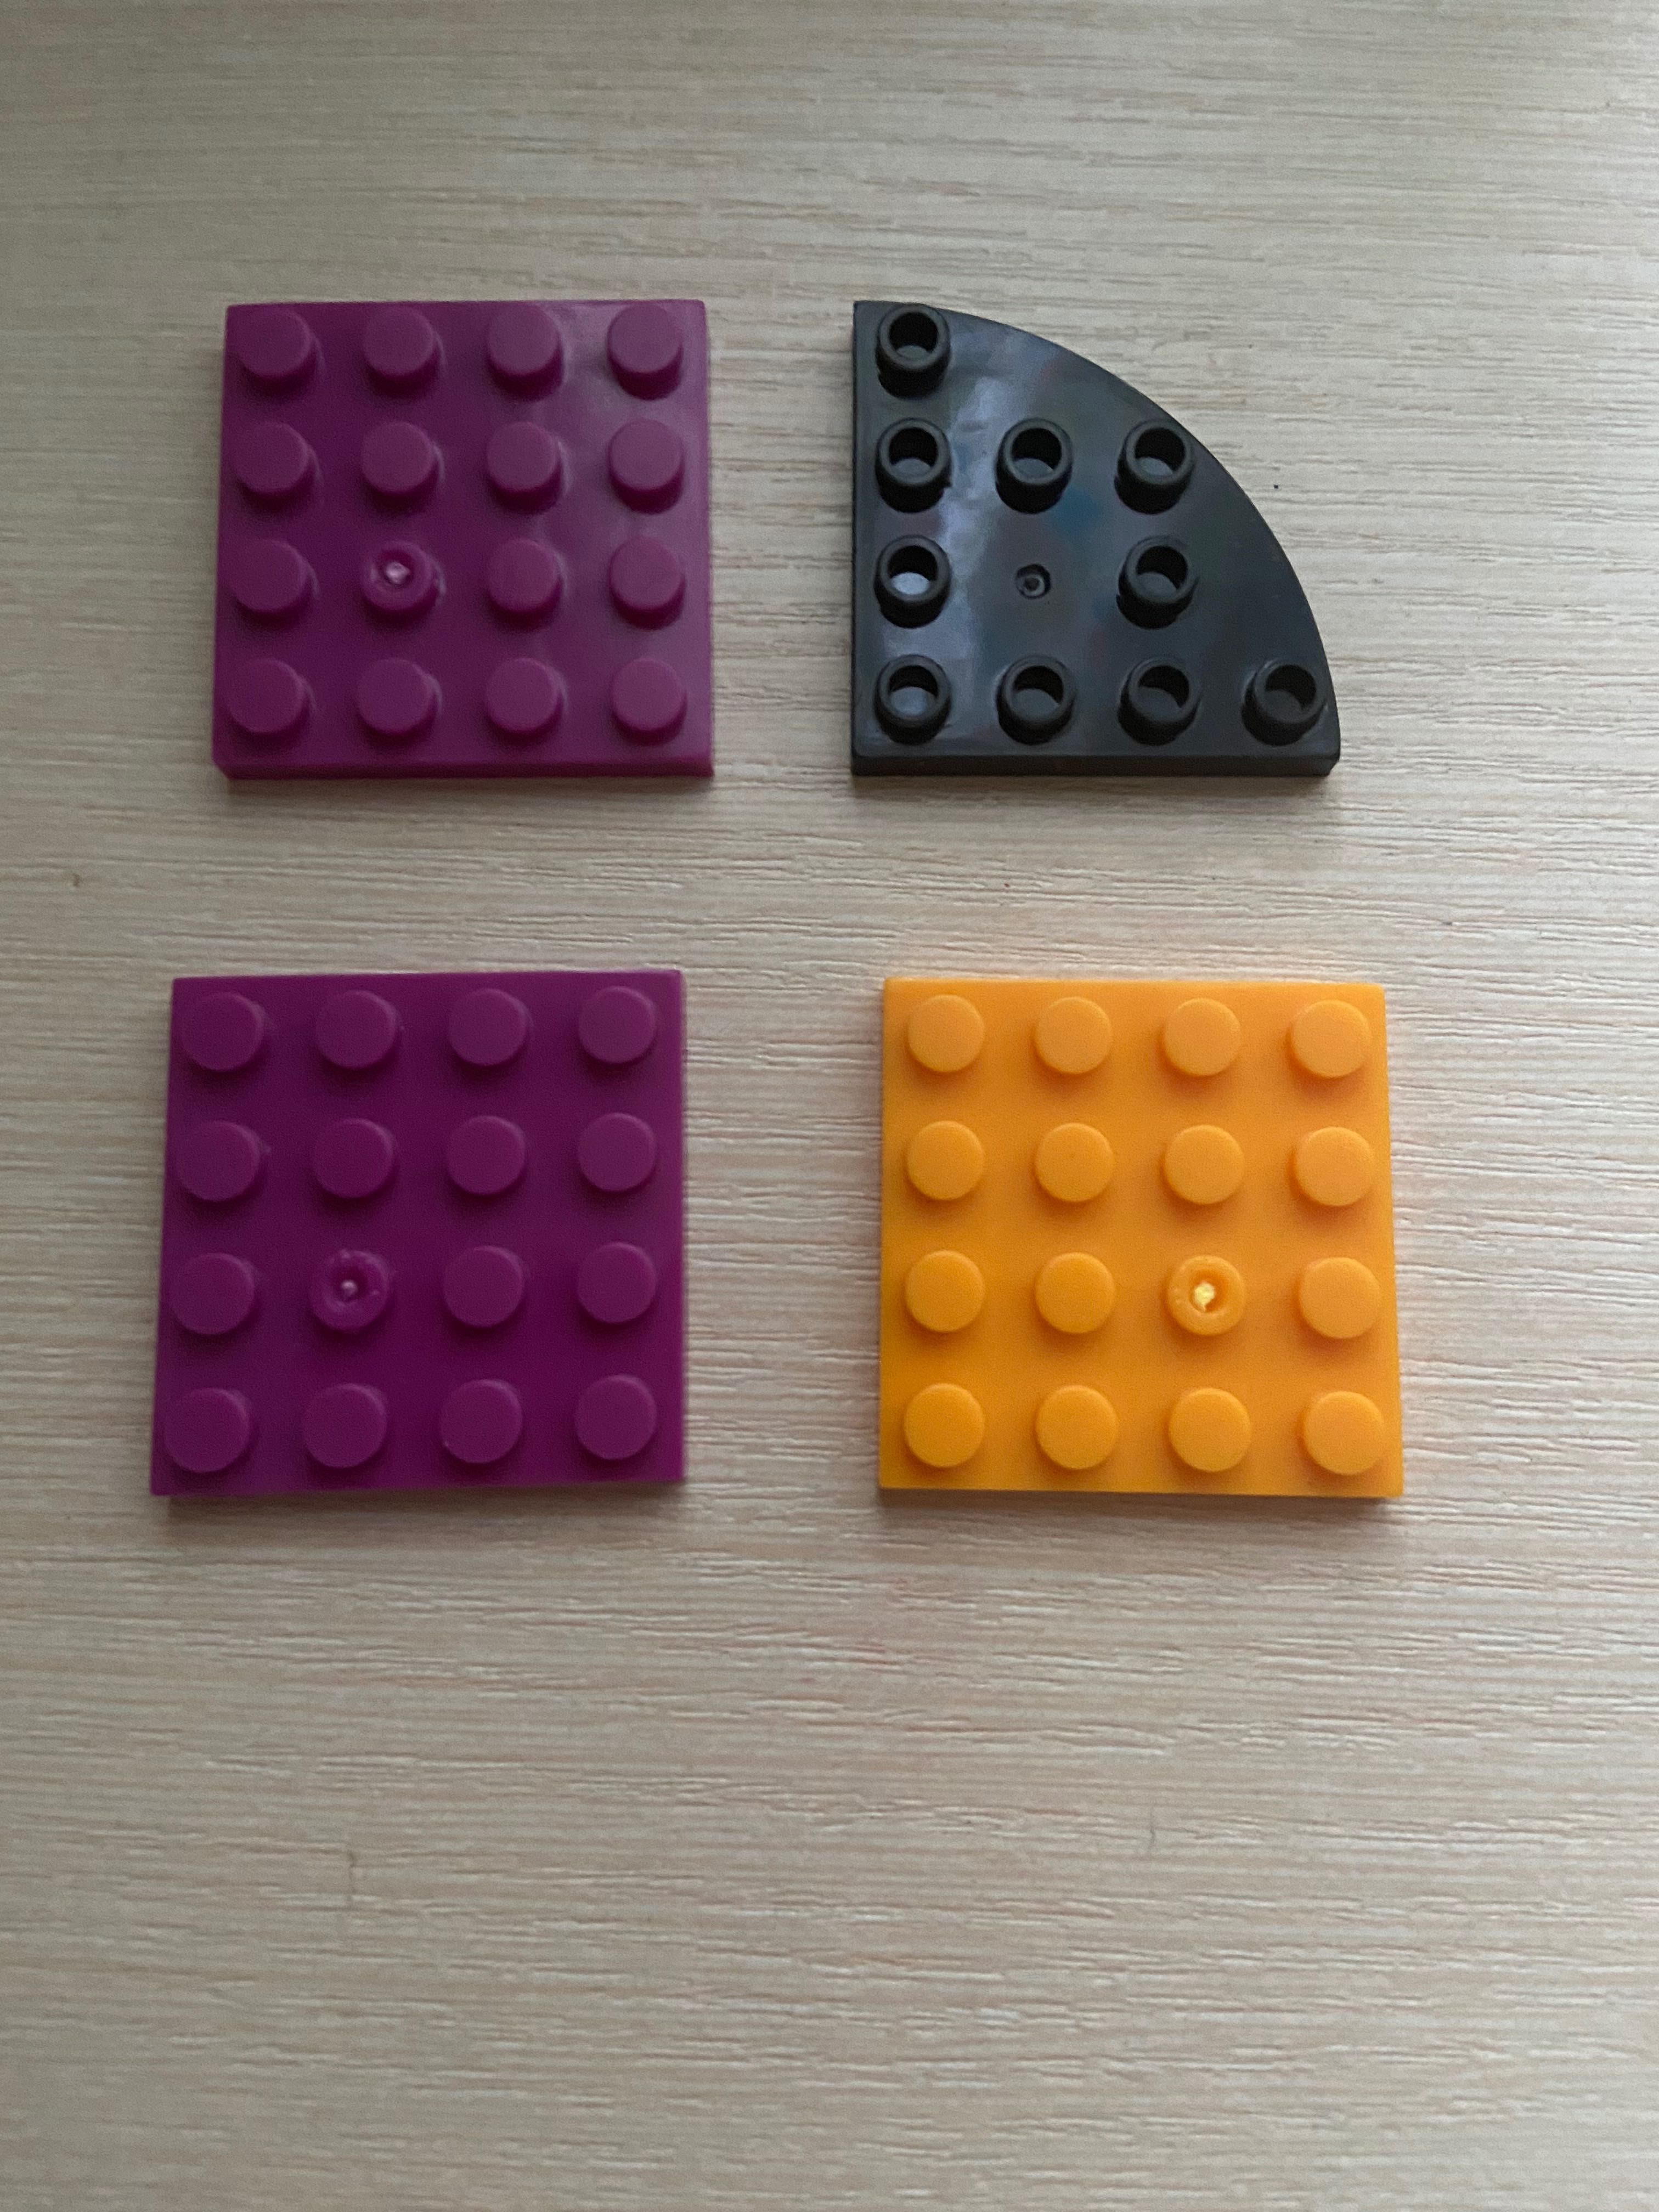 Детали от LEGO от 10 коп за шт